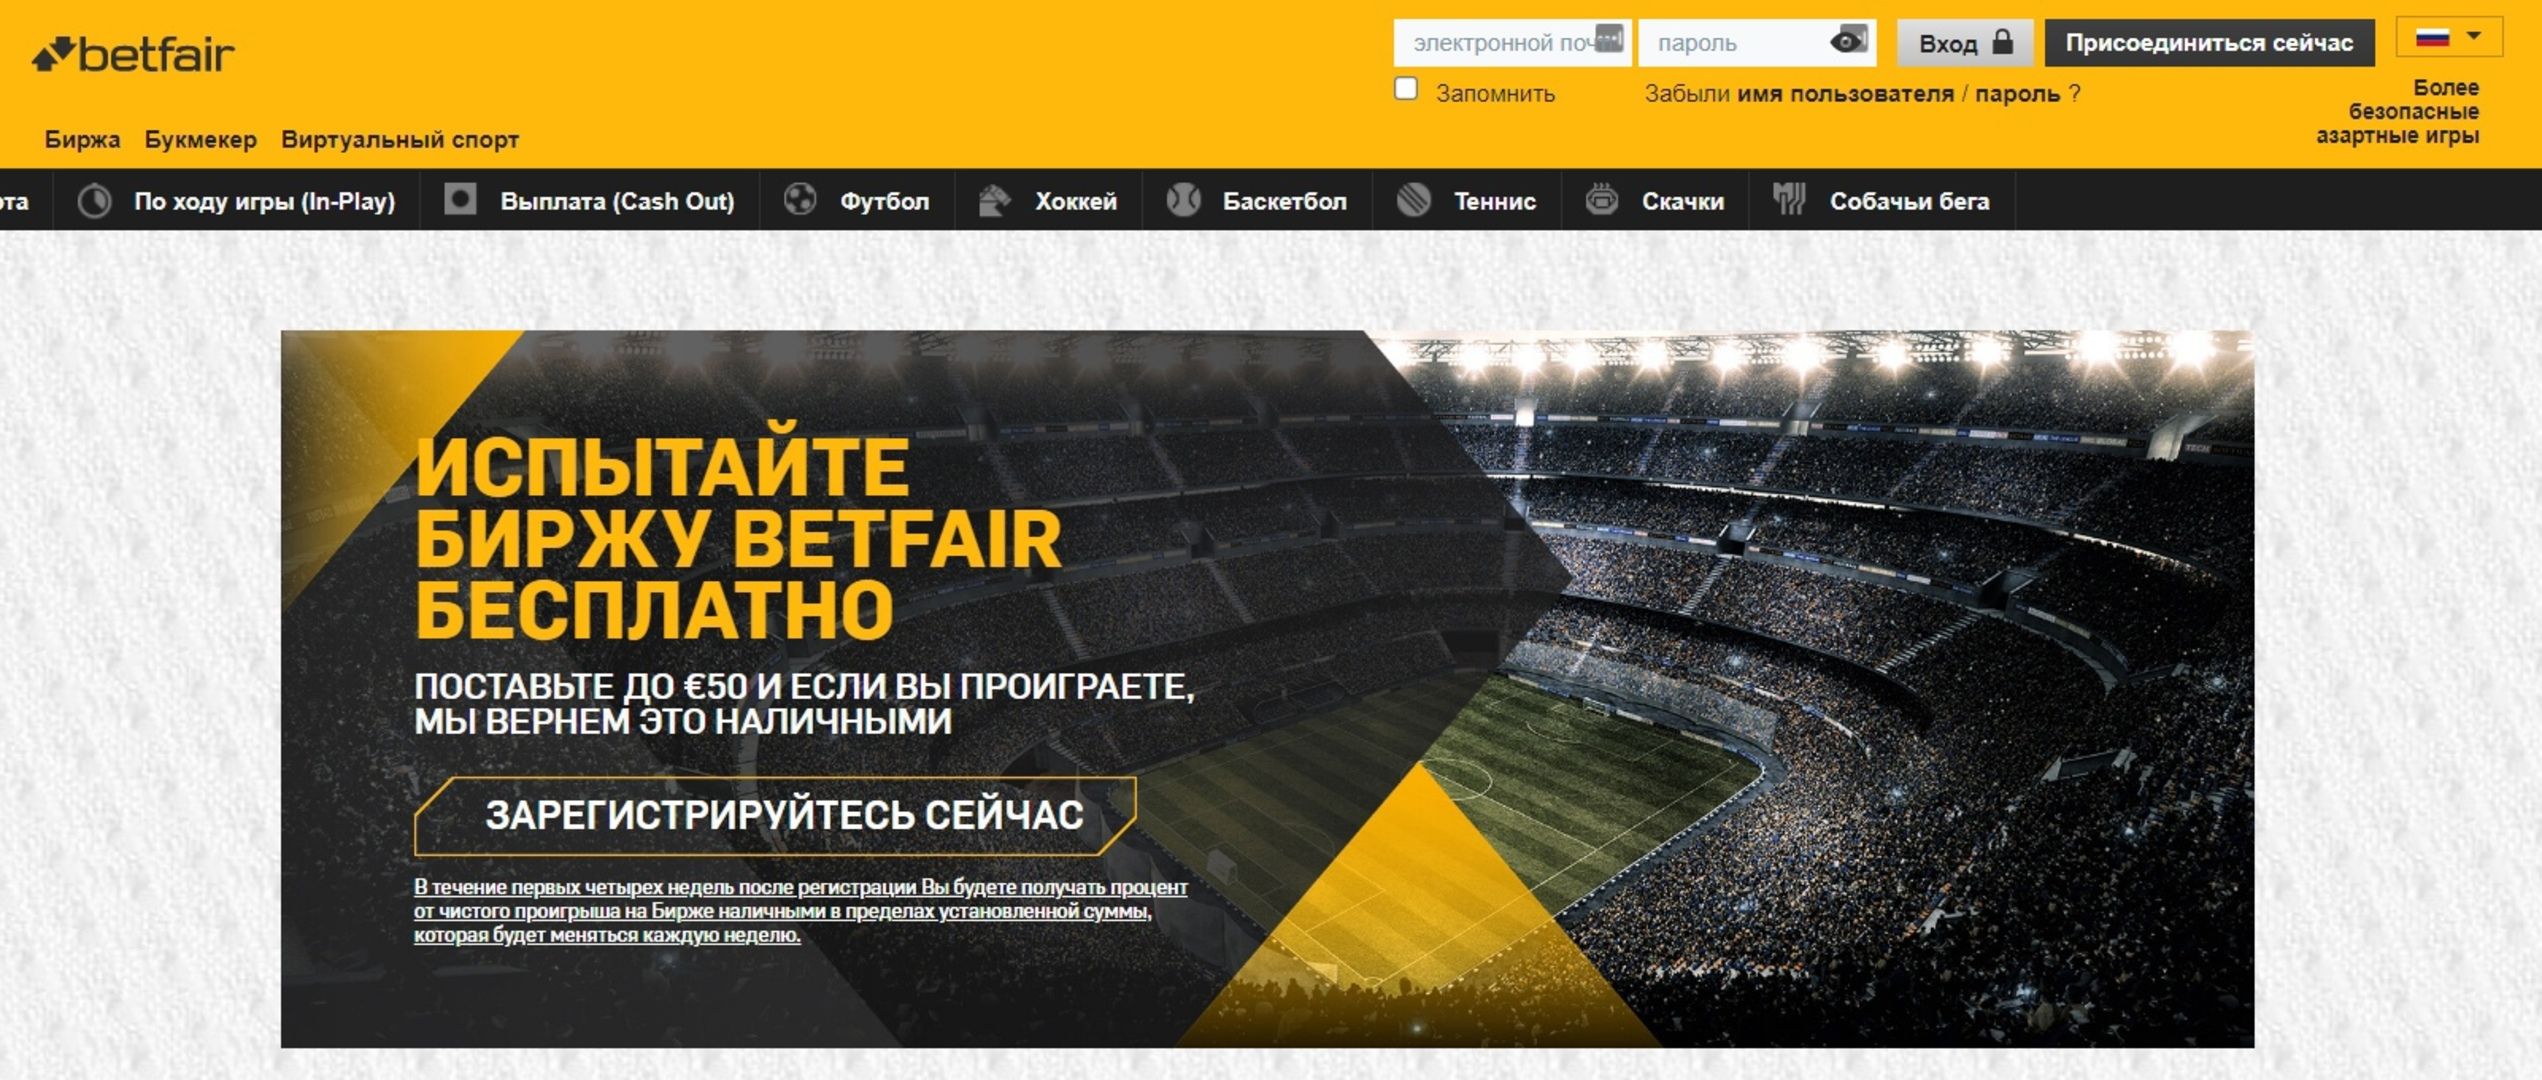 Арбитраж в betfair букмекерская контора онлайн ставки на спорт украина